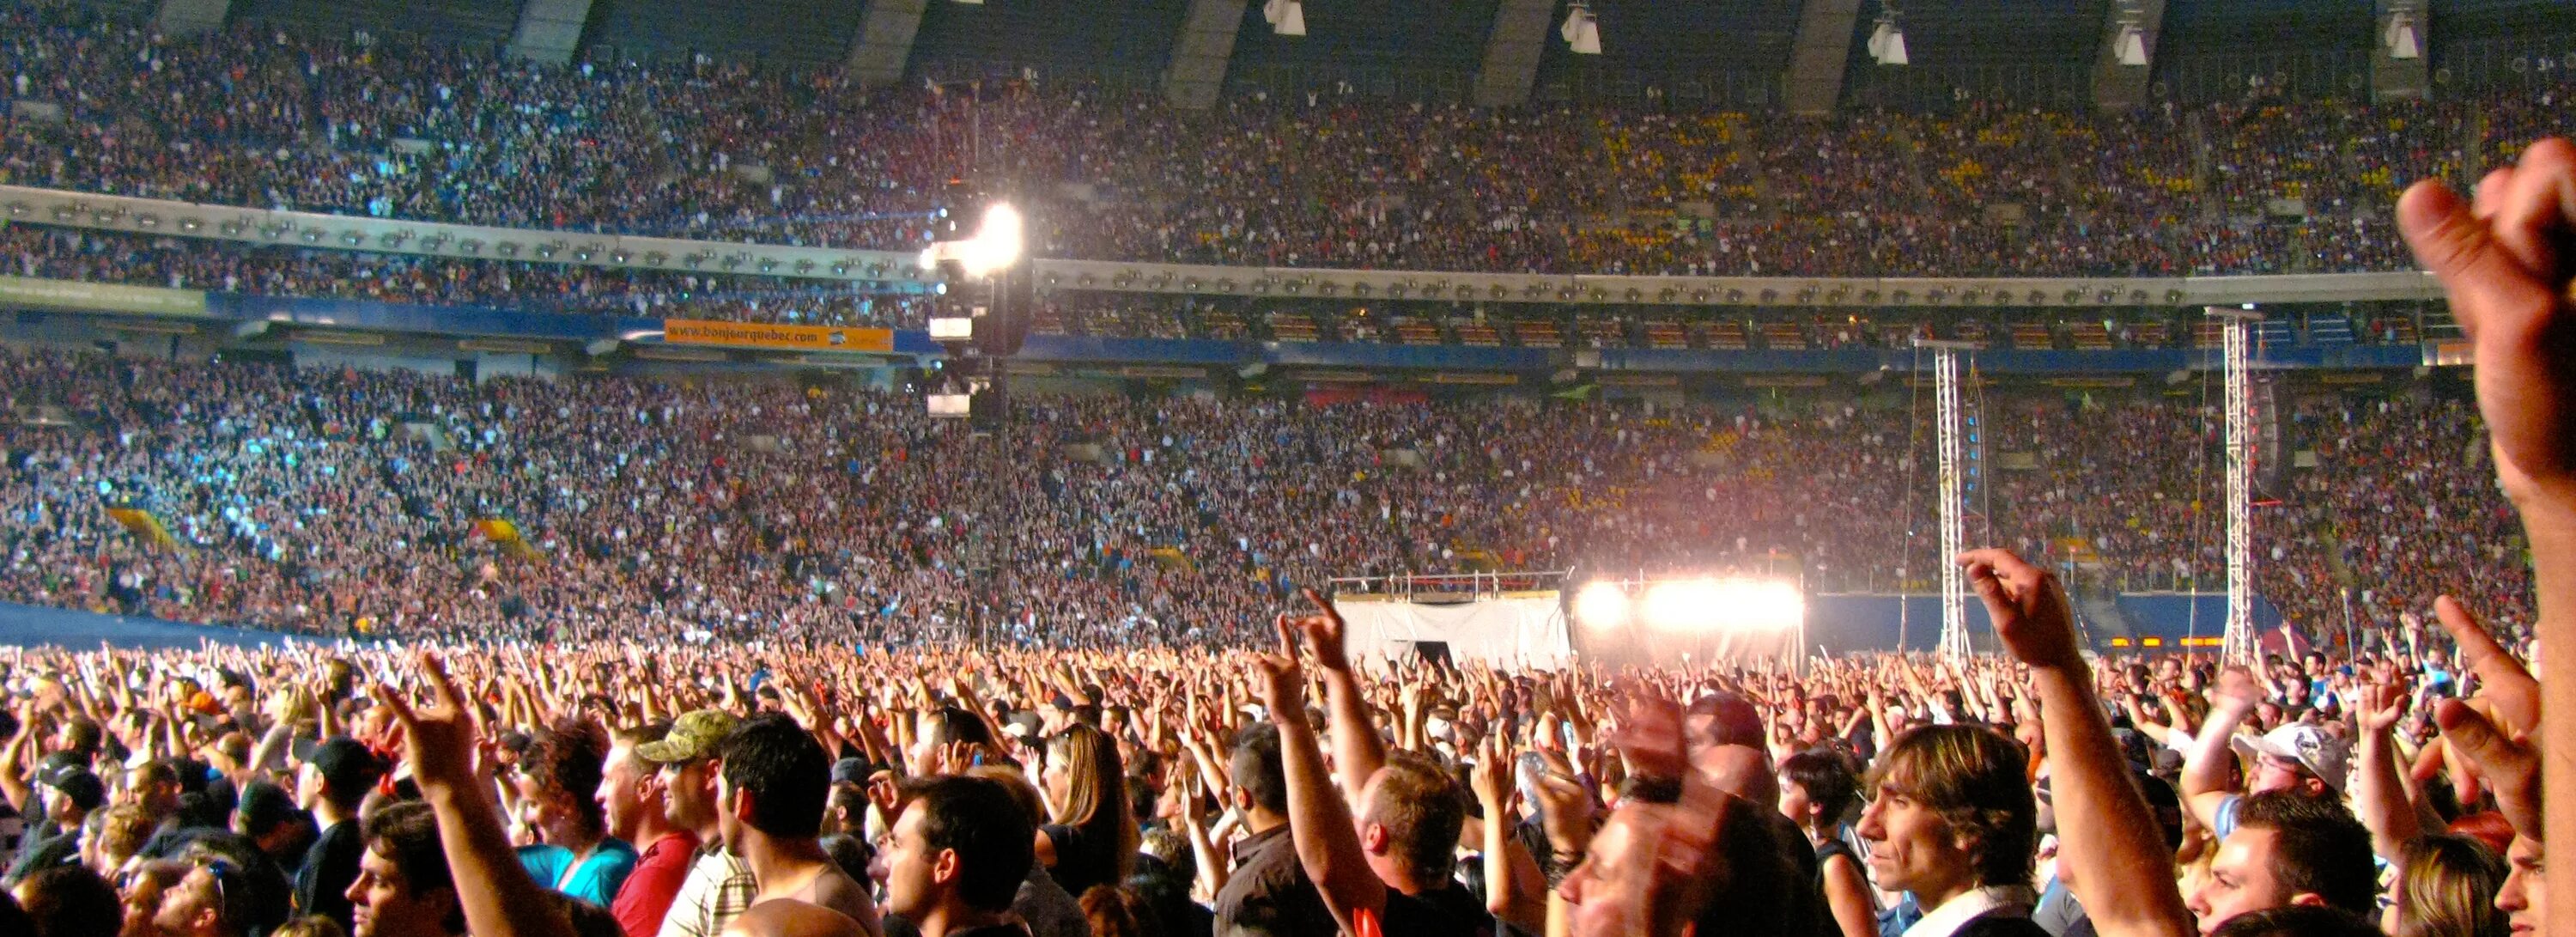 Сколько зрителей было на концерте. AC DC концерт 2009. АС ДС концерт стадион. Концерт AC DC 2009 River. Толпа на стадионе.